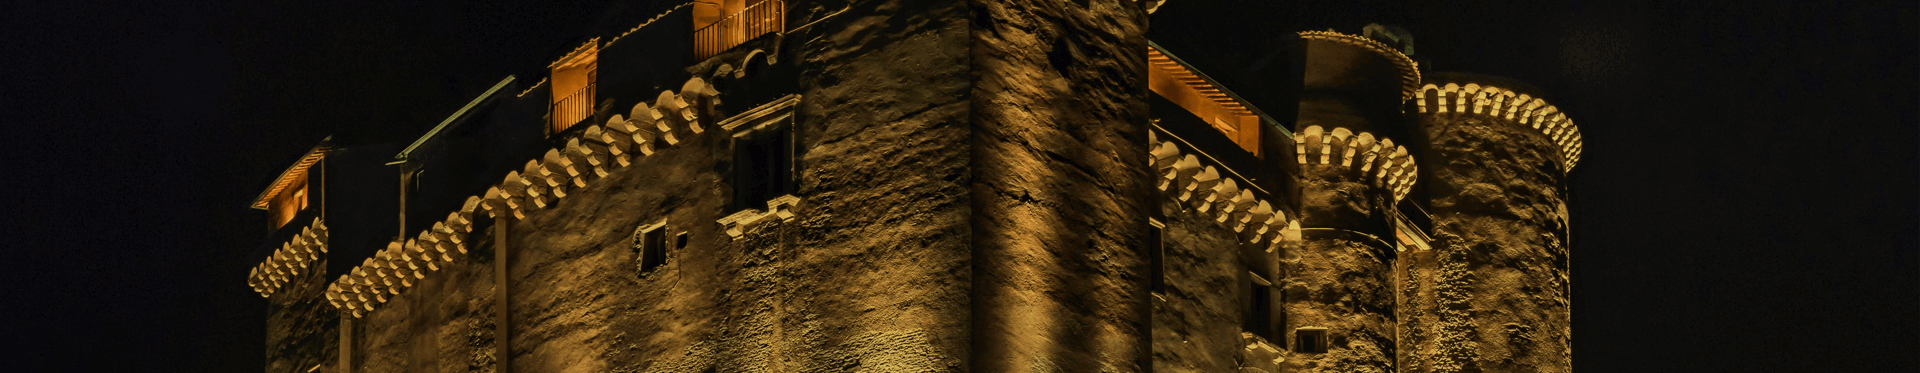 Acea, l'illuminazione al LED del Castello di Santa Severa